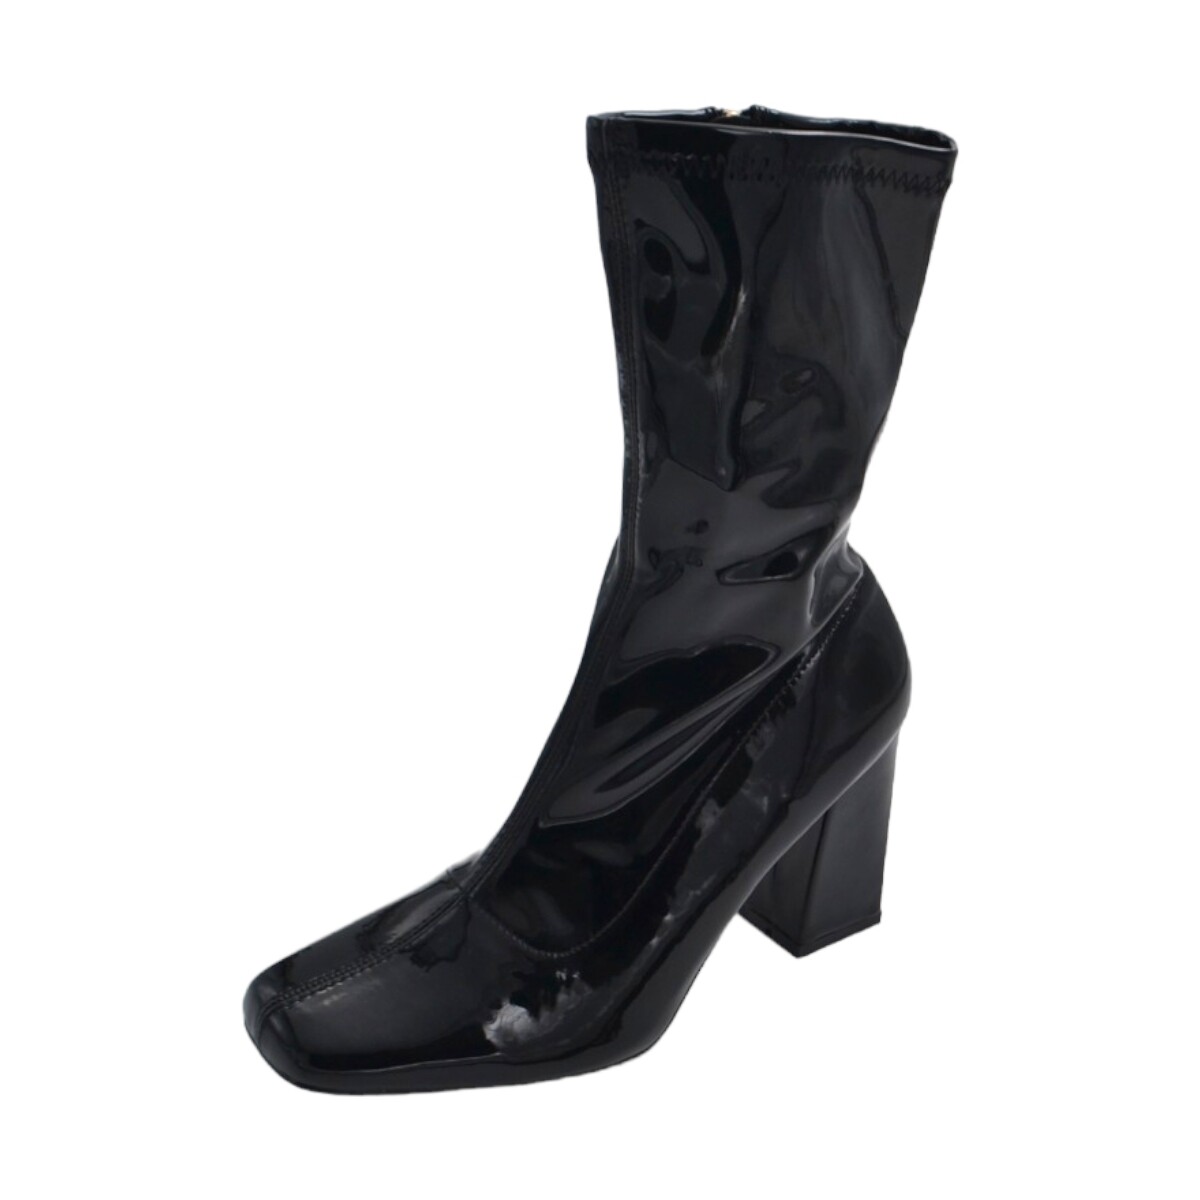 Scarpe Donna Tronchetti Malu Shoes Tronchetti alti donna nero lucido a punta quadrata tacco comodo Nero